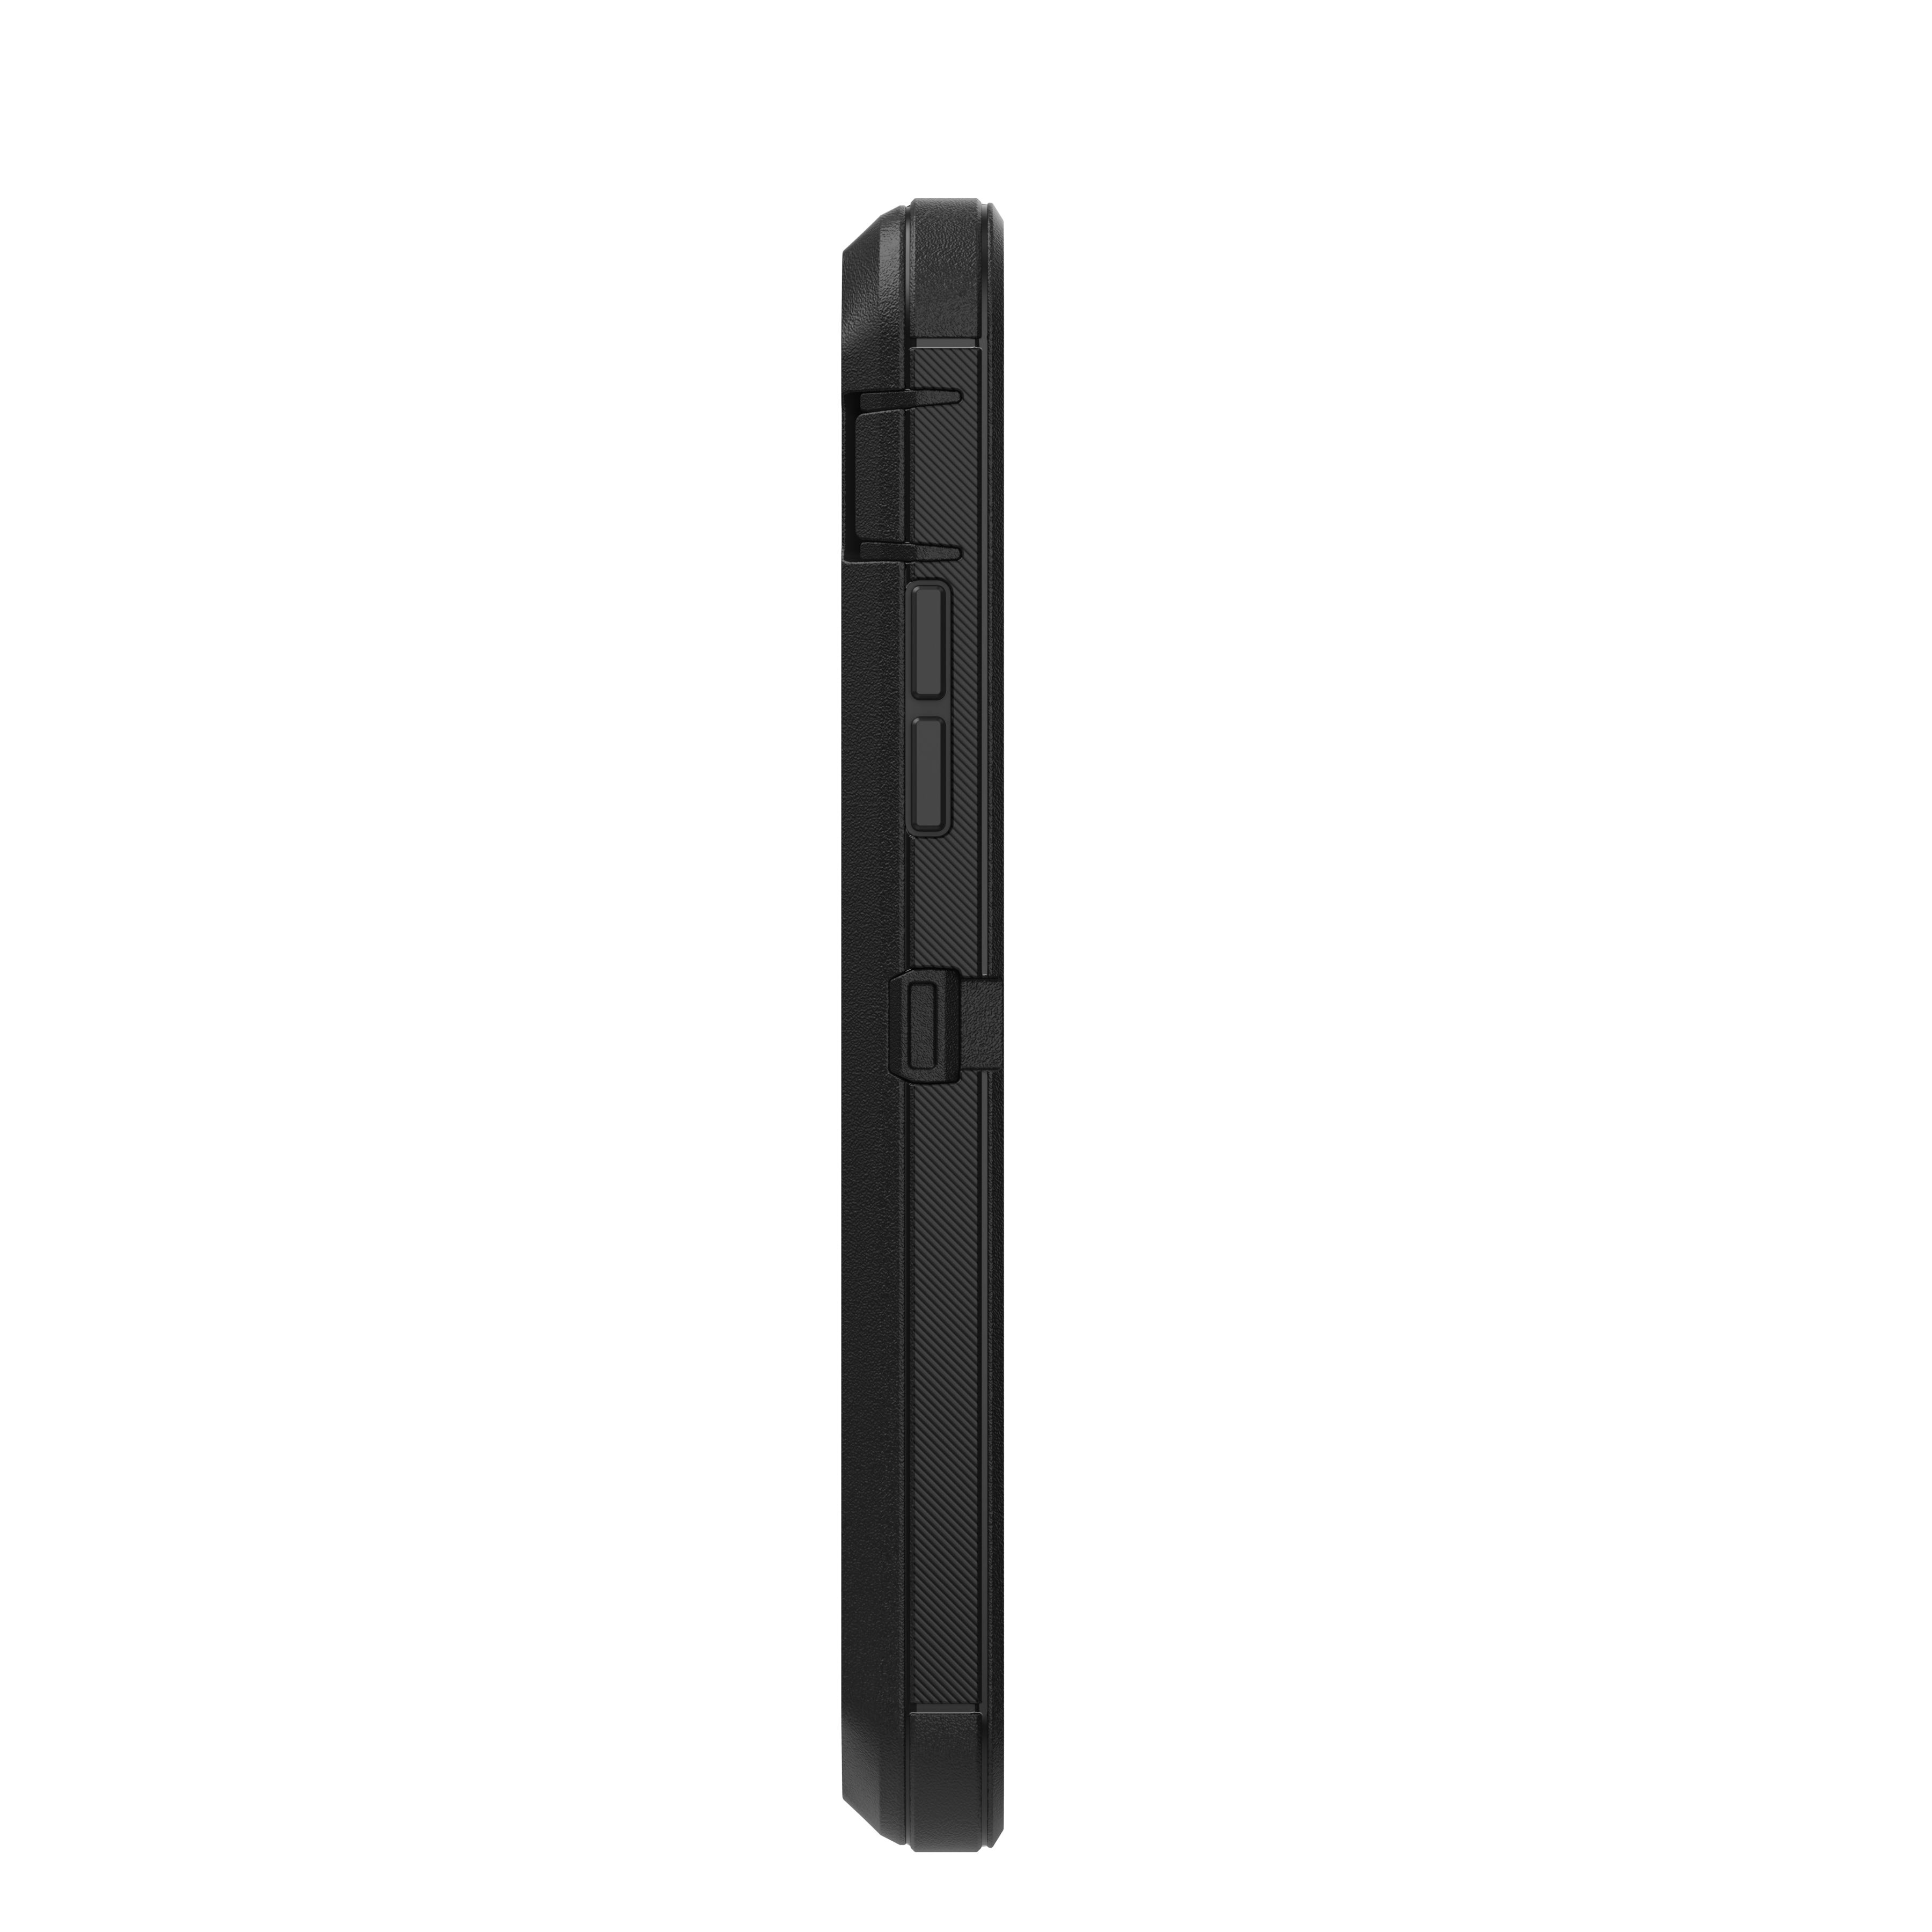 iPhone SE (2022) Defender Case Black